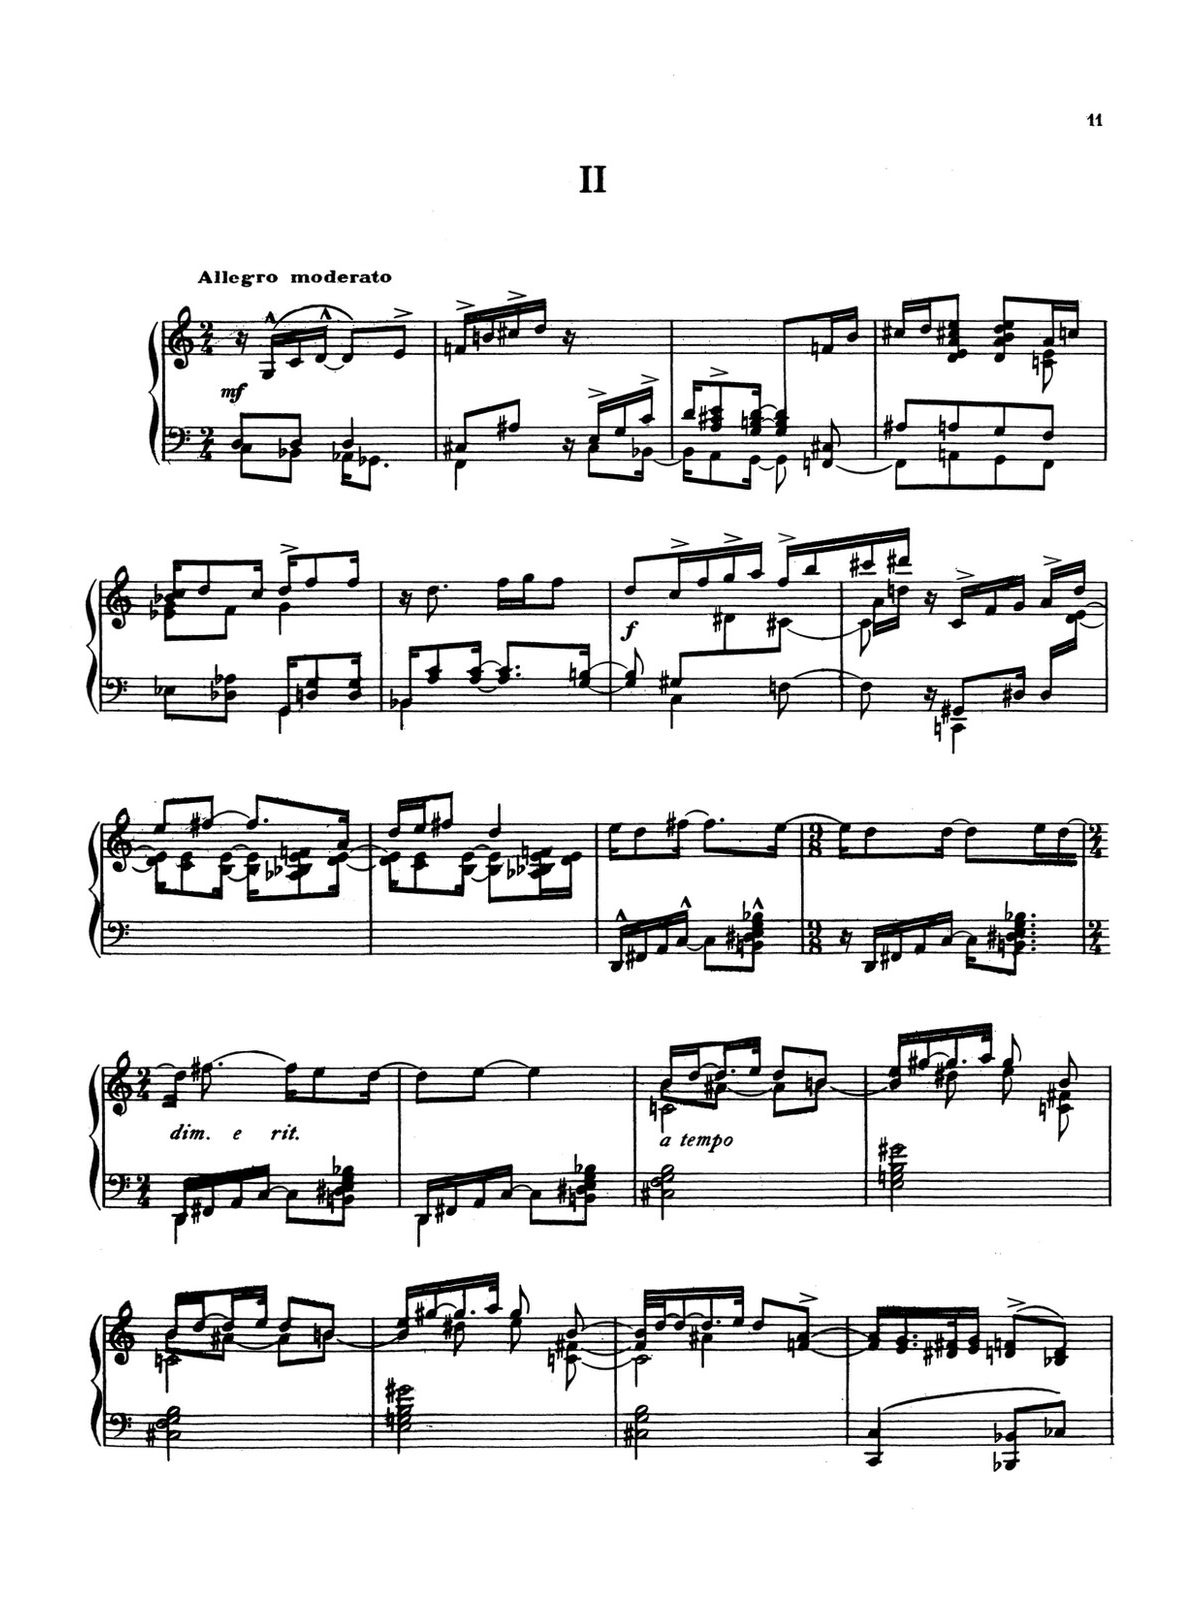 Ives, First Piano Sonata-p13